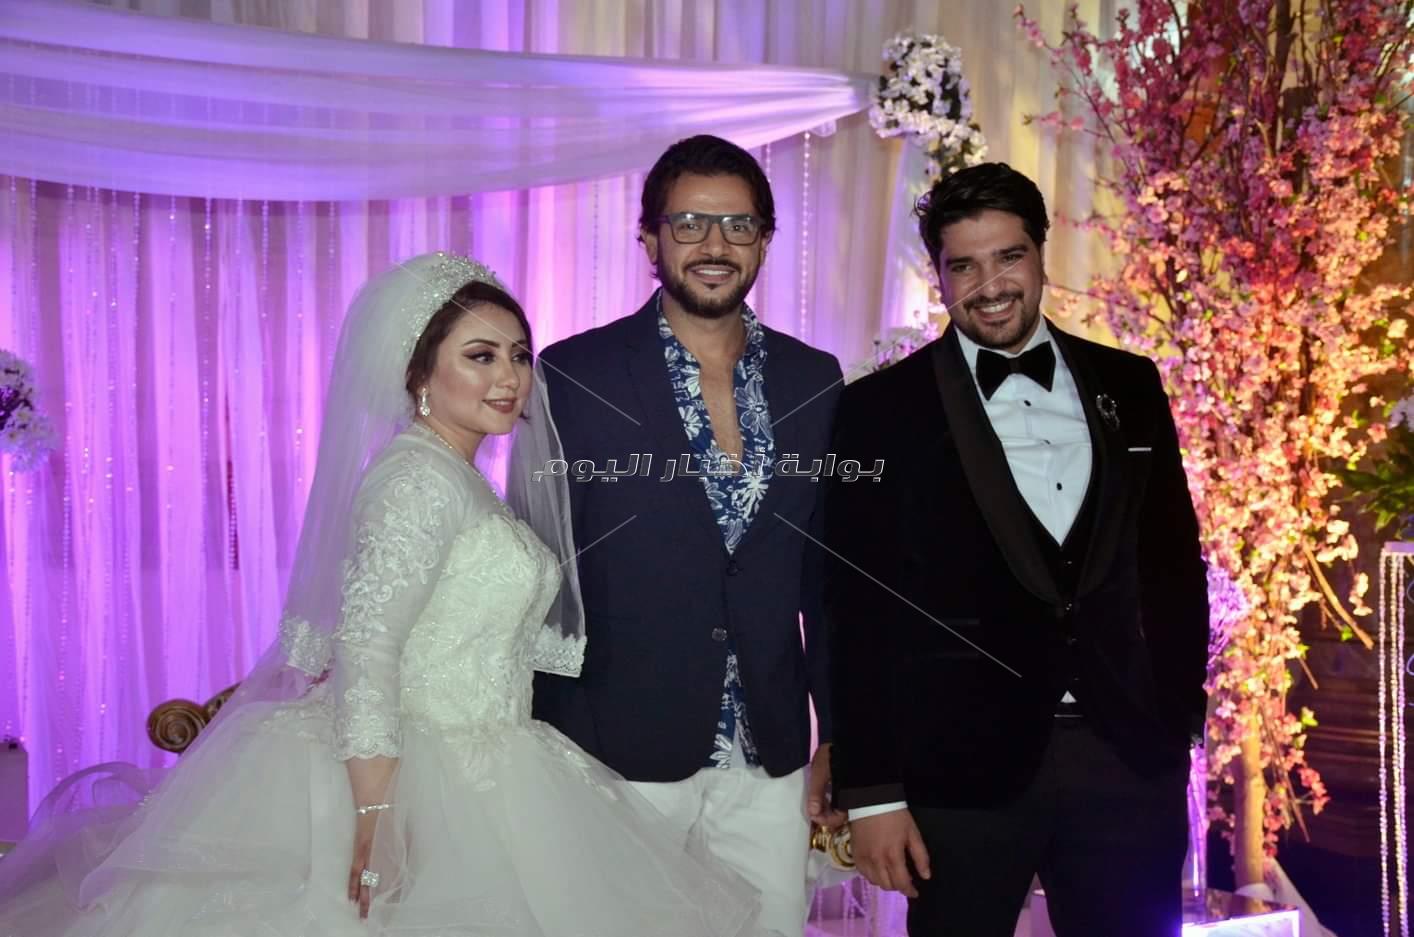 بهاء سلطان وسامو زين أبرز حضور زفاف شقيق الملحن معتز أمين